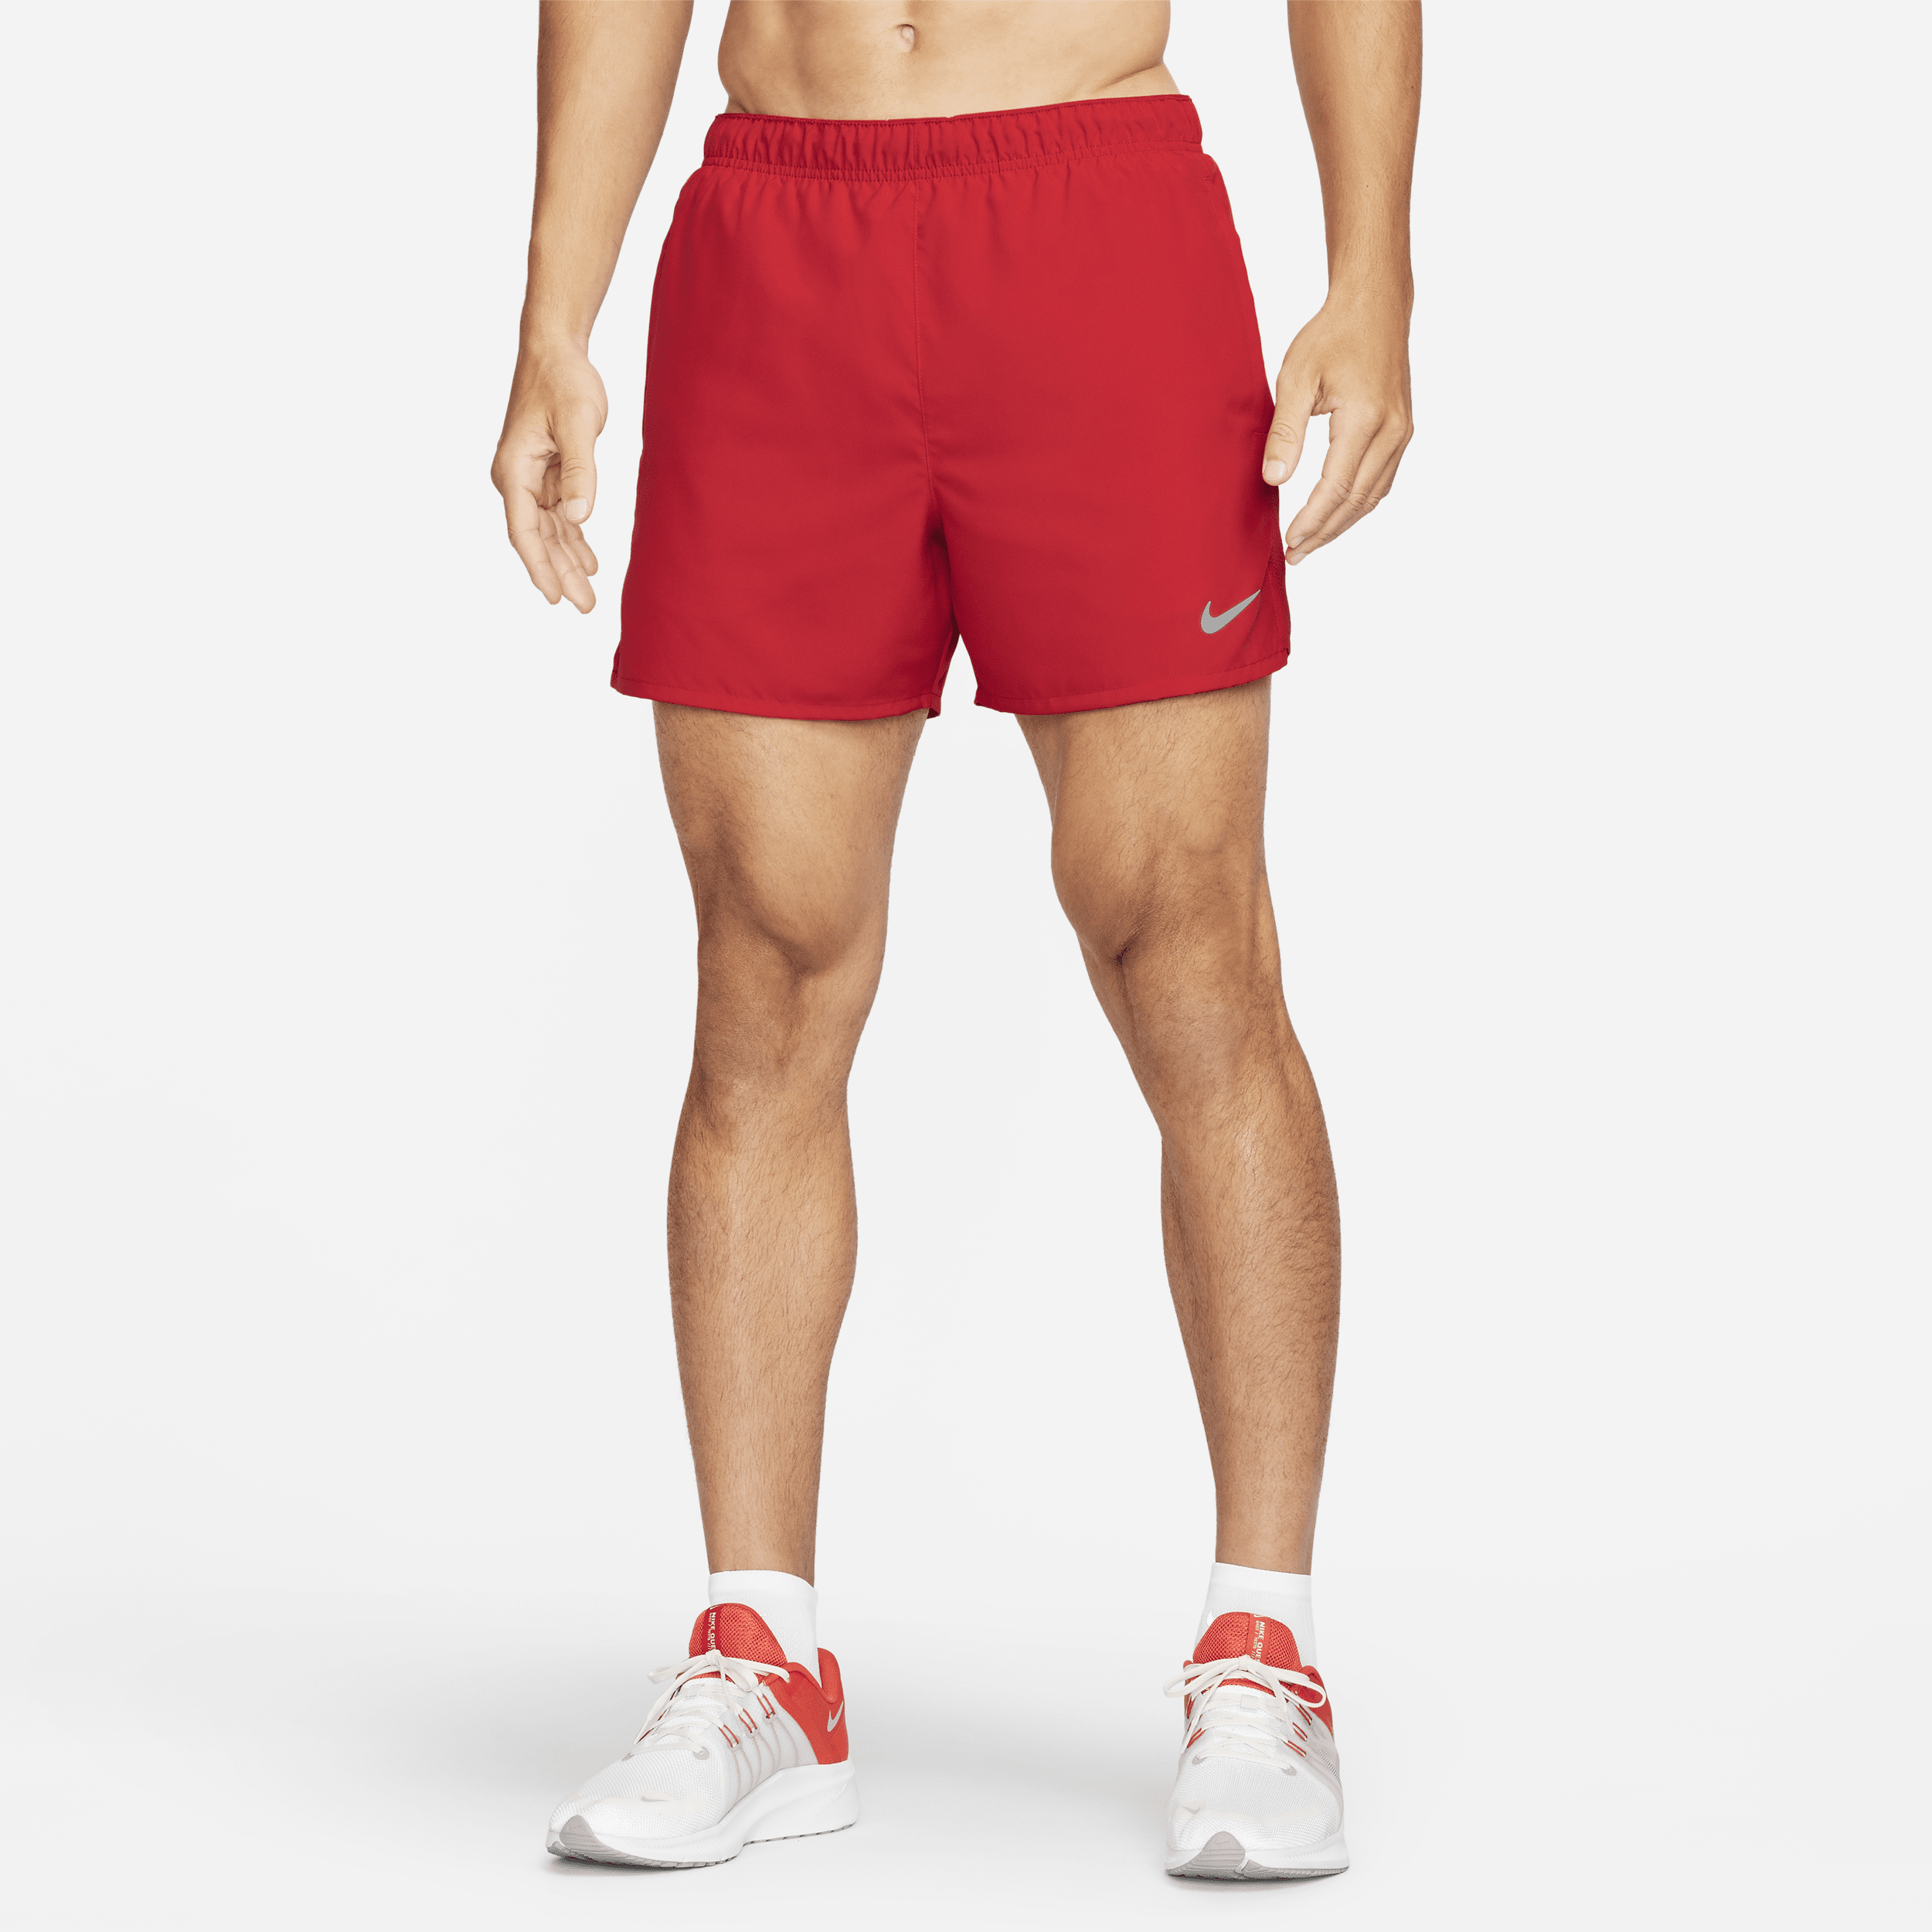 Shorts da running Dri-FIT con slip foderati 13 cm Nike Challenger – Uomo - Rosso